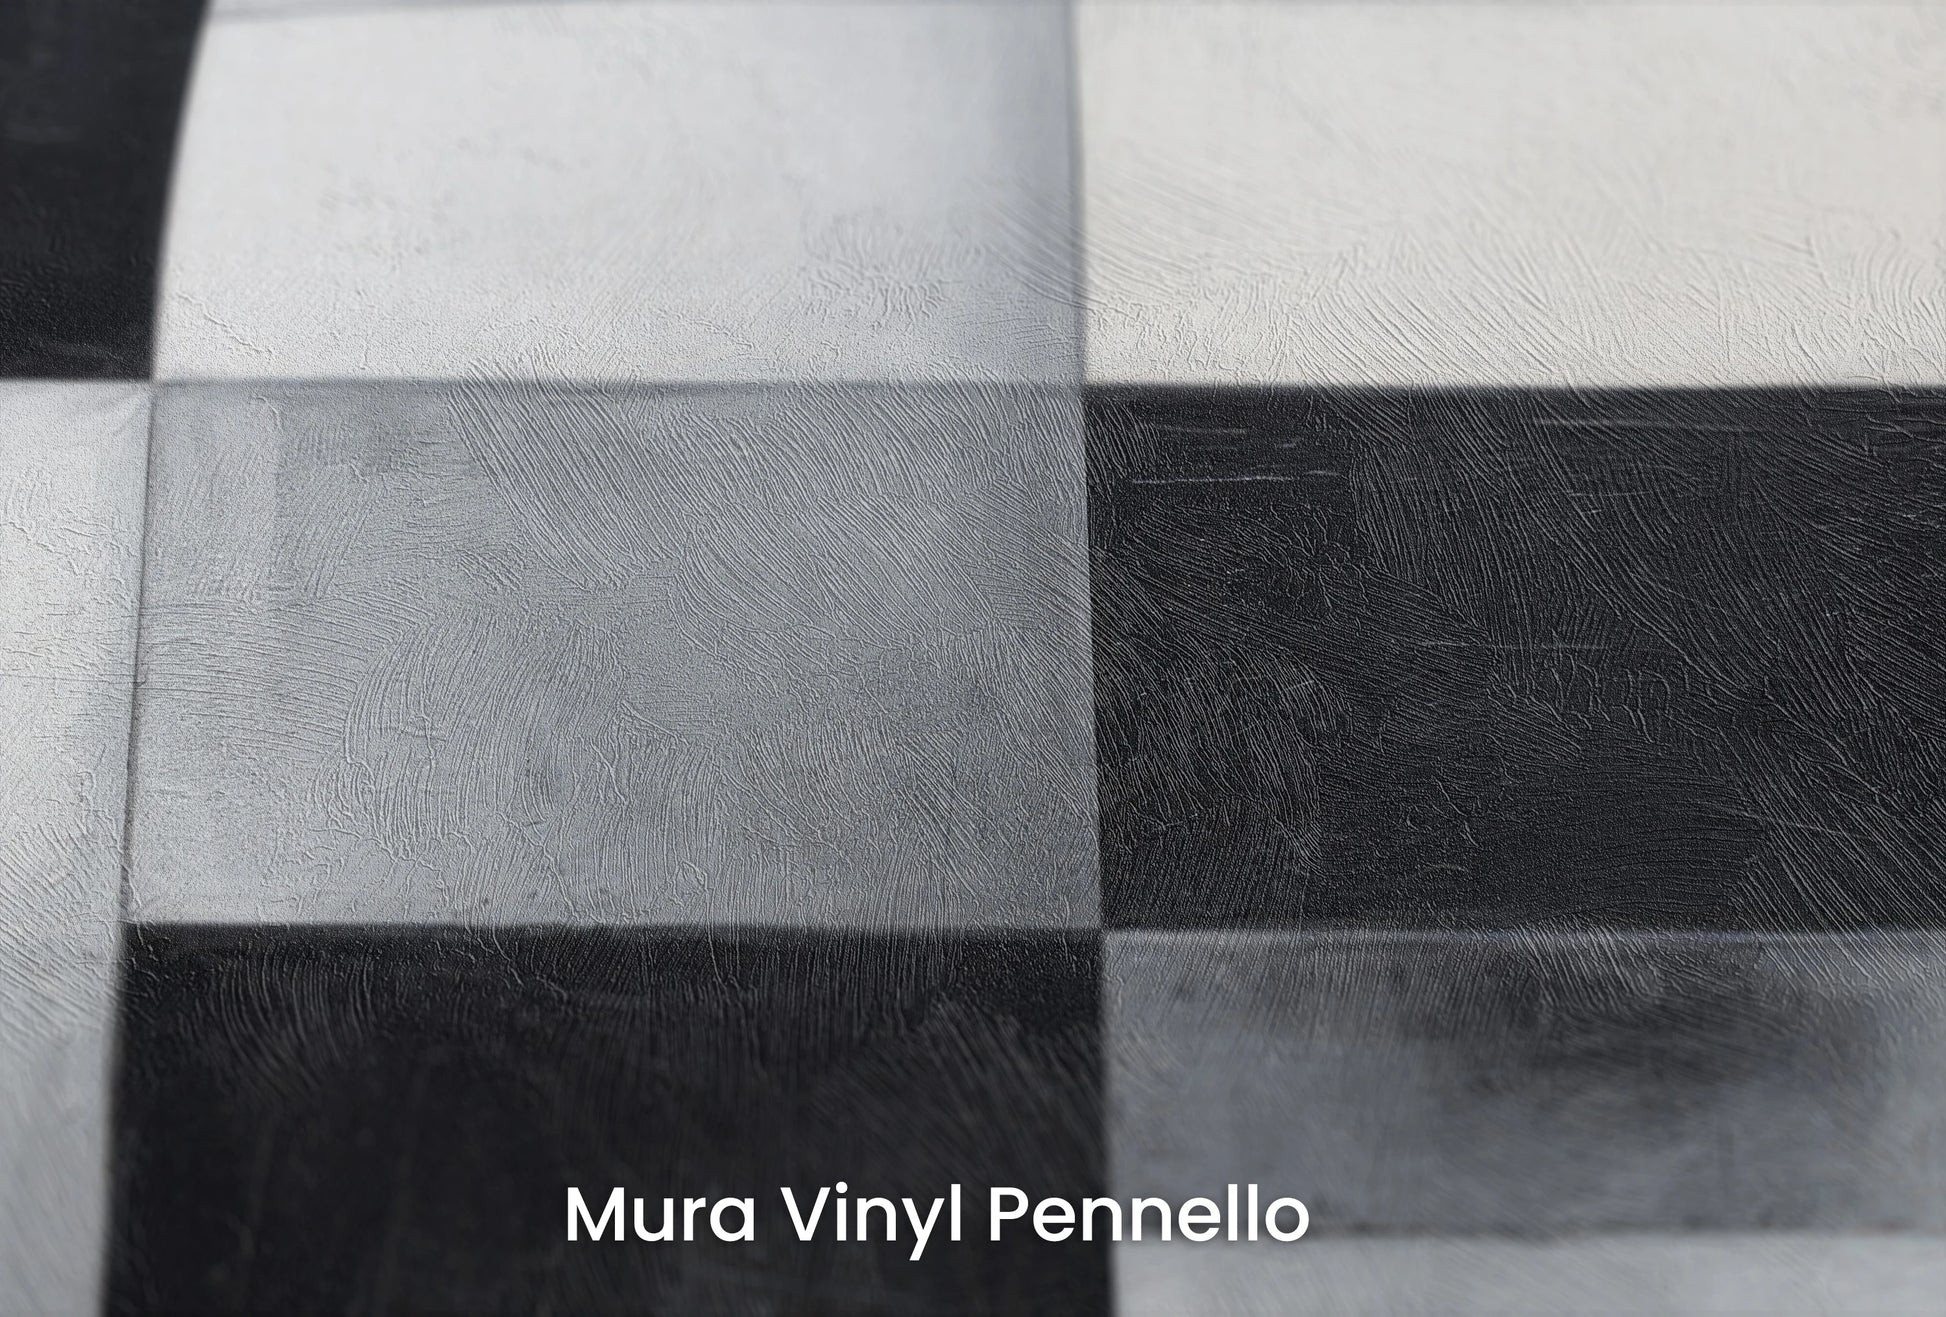 Zbliżenie na artystyczną fototapetę o nazwie Monochrome Crescent Intersection na podłożu Mura Vinyl Pennello - faktura pociągnięć pędzla malarskiego.